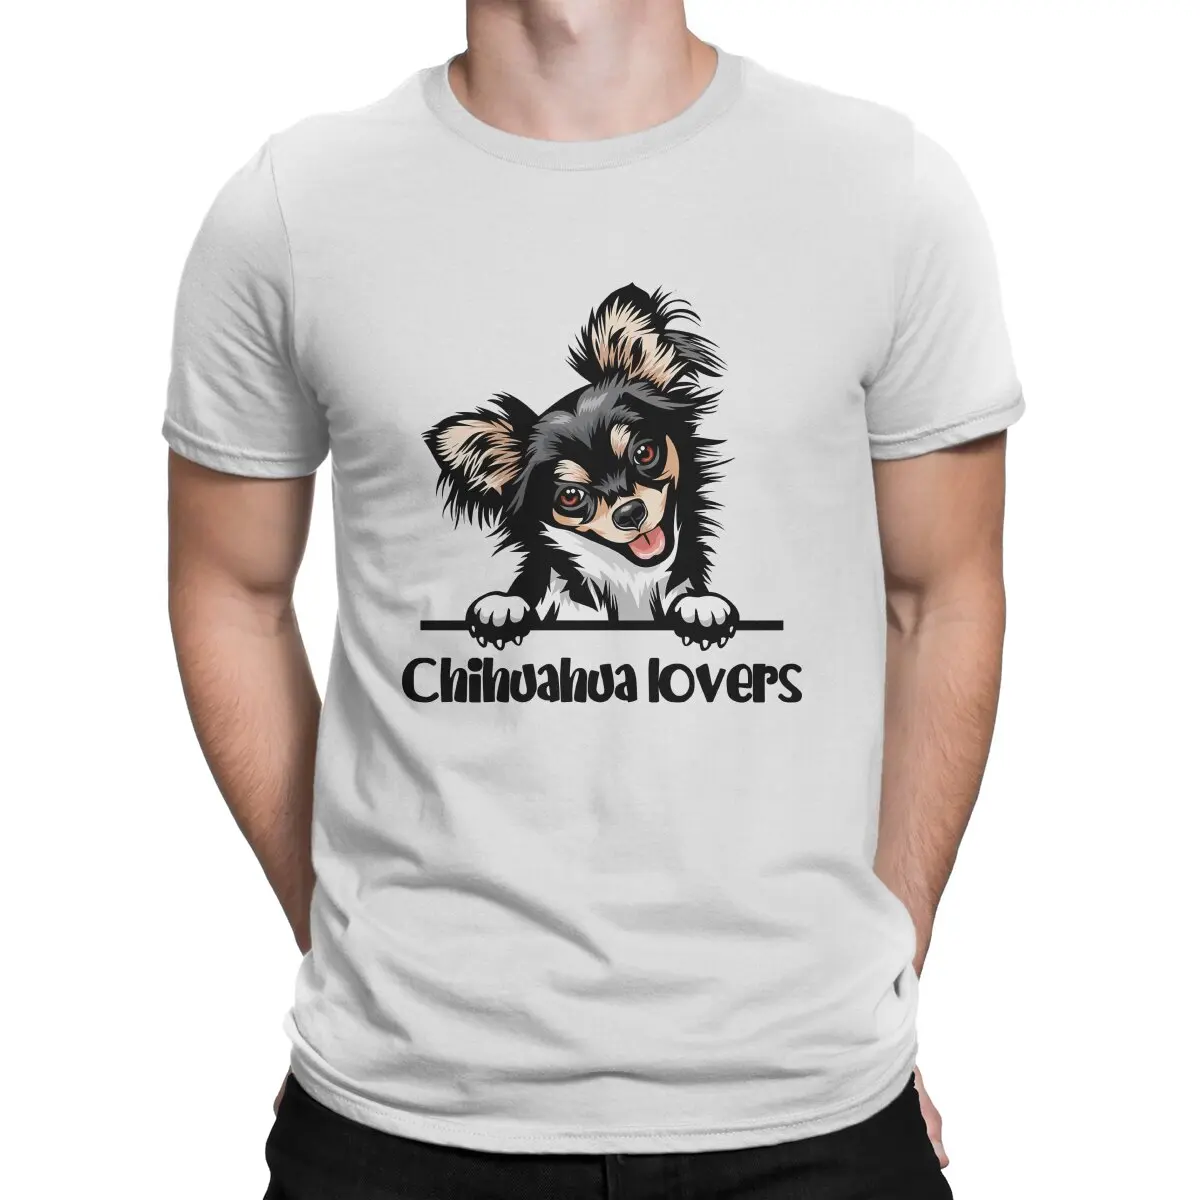 Футболка в стиле хип-хоп с длинными волосами, повседневная футболка для любителей собак породы чихуахуа, горячая распродажа, футболка для взрослых